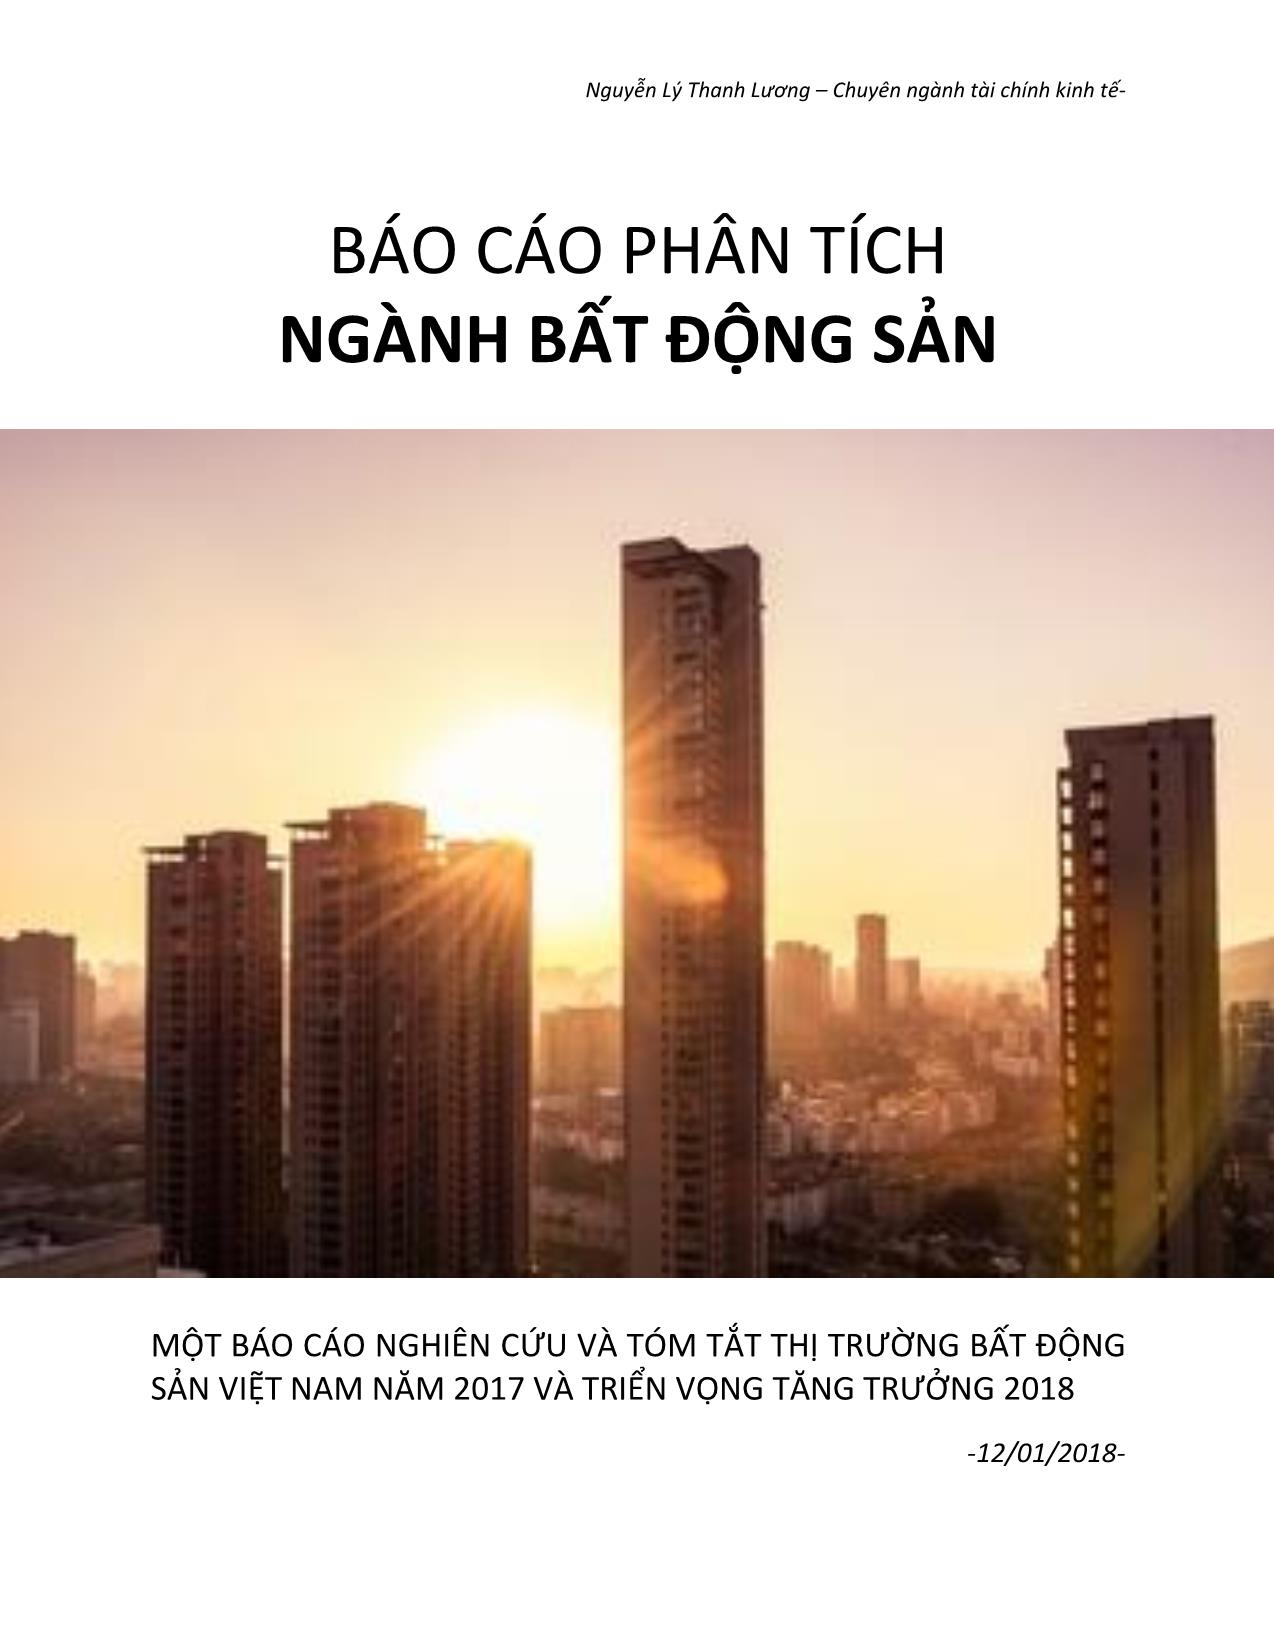 Báo cáo phân tích ngành bất động sản - Nguyễn Lý Thanh Lương trang 1